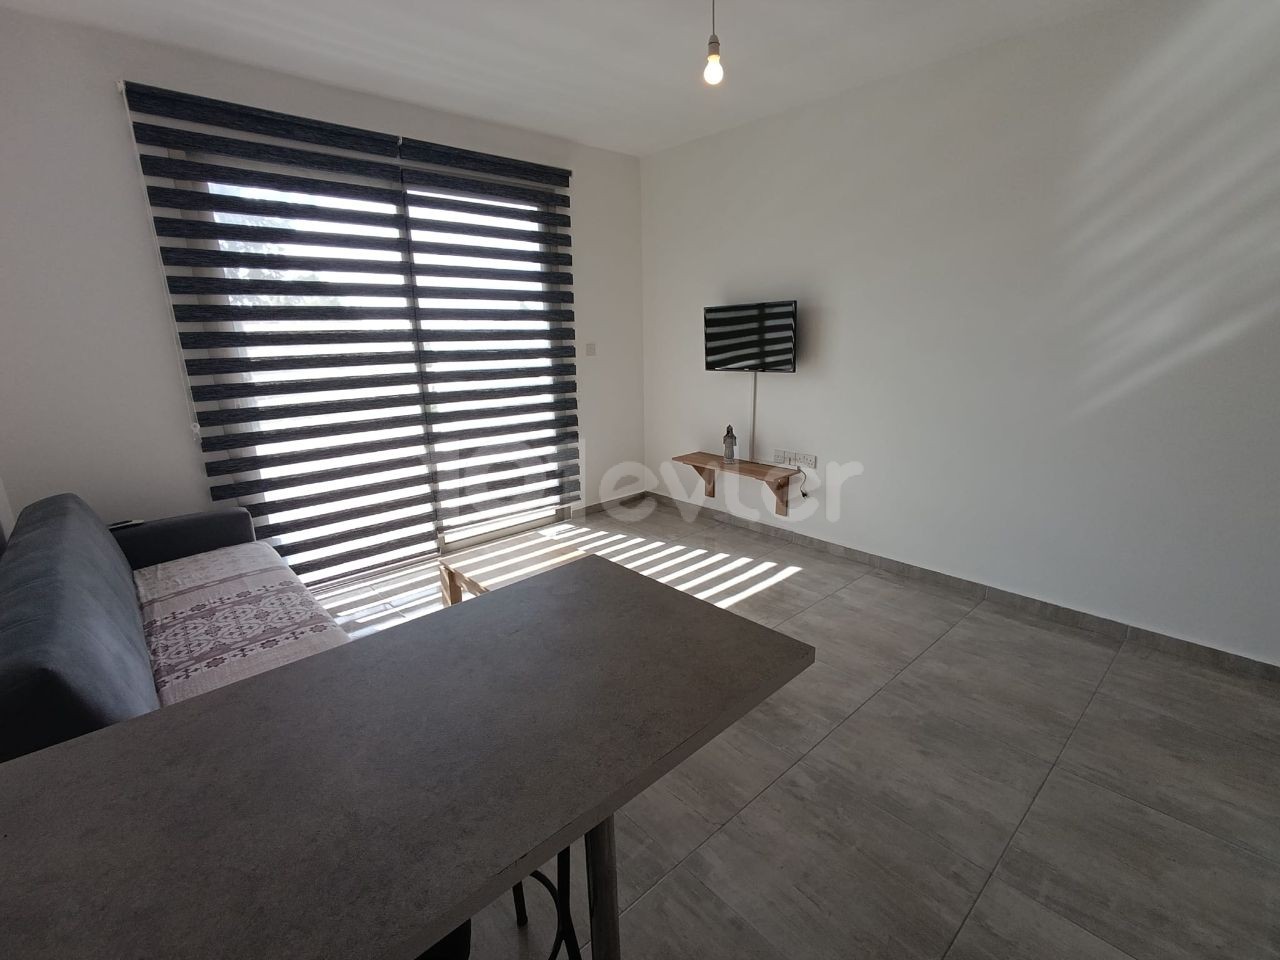 1+1 flat for rent in Girne Karaoğlanoğlu area